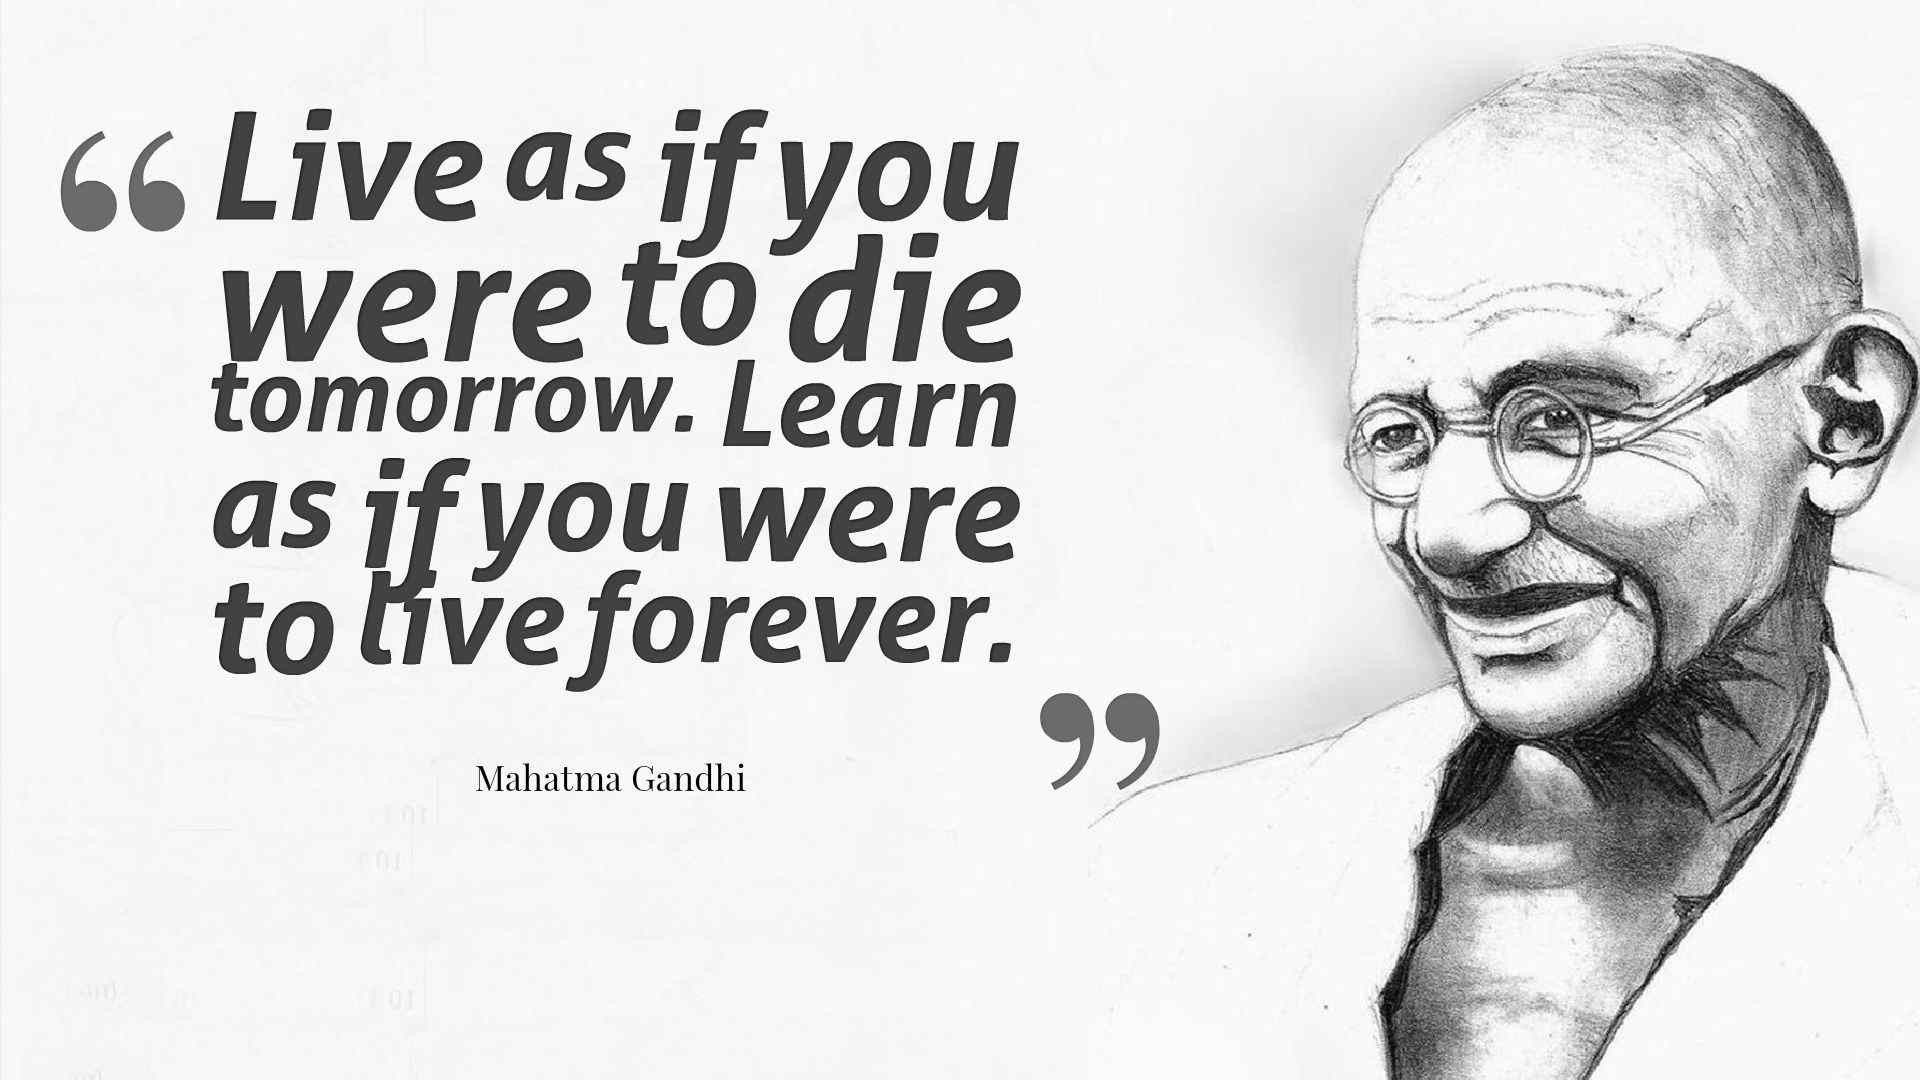 Mahatma Gandhi Quotes On Education
 Confucius Quotes About Education QuotesGram